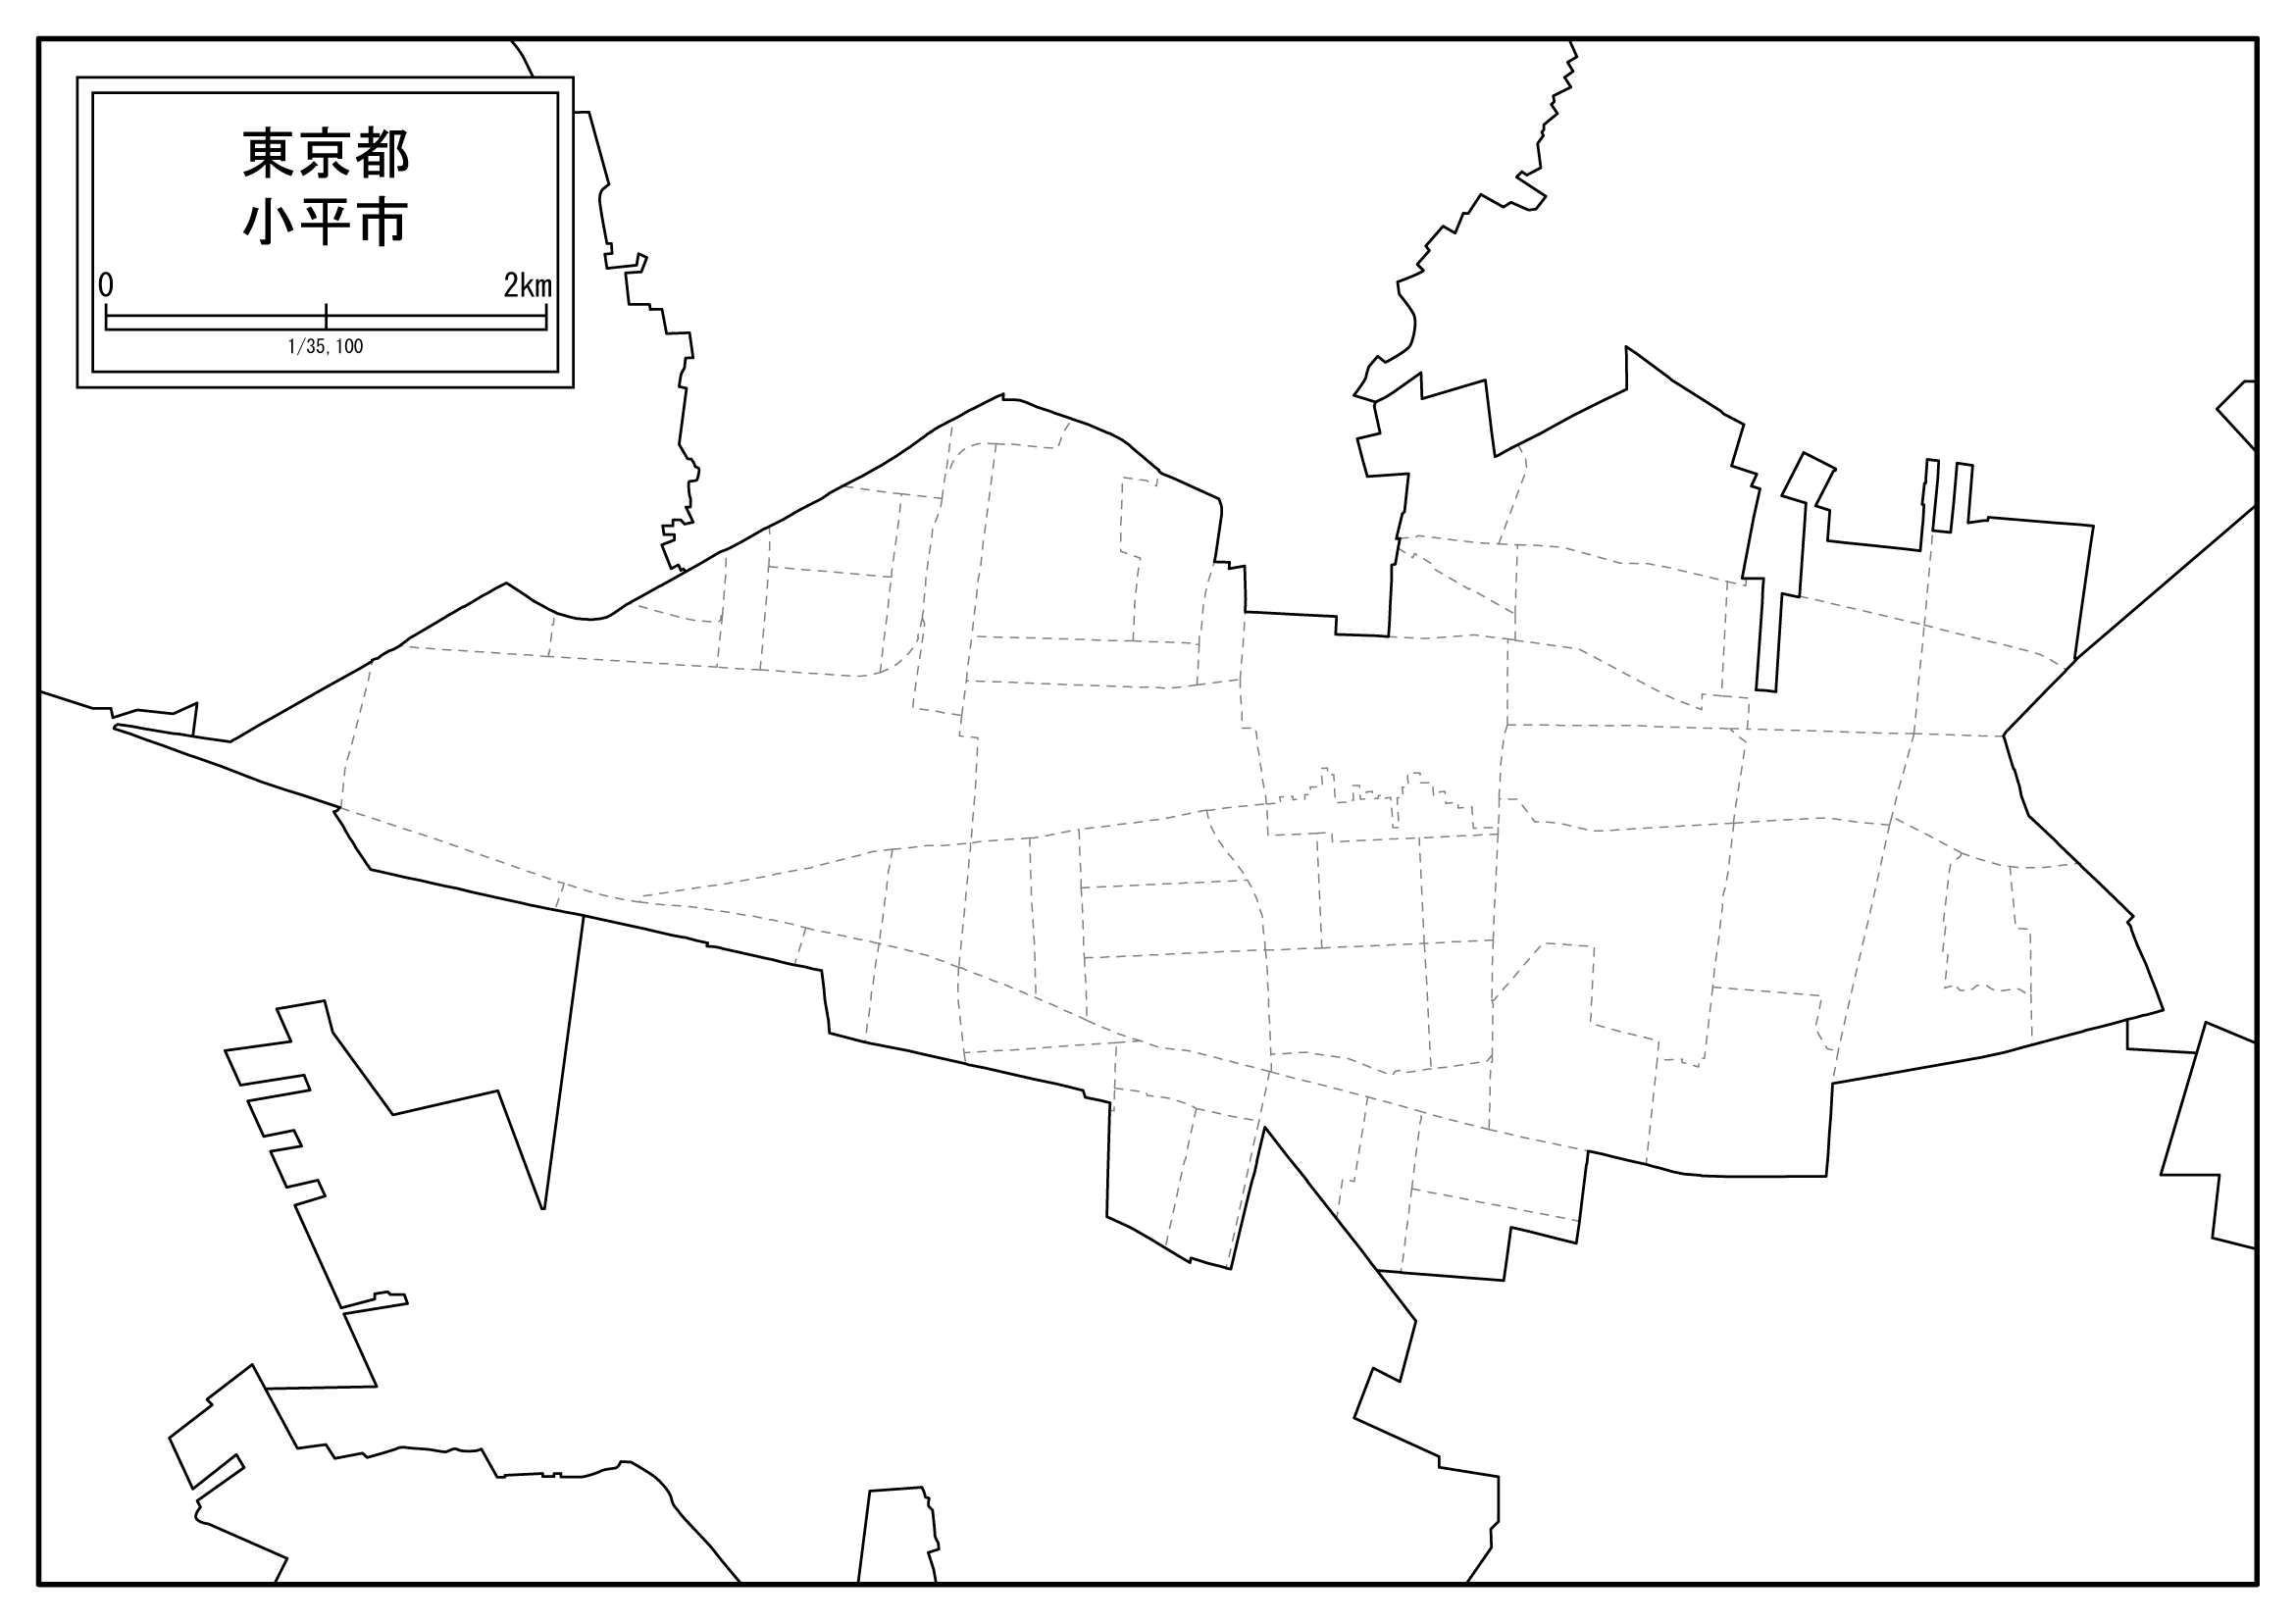 小平市の白地図を無料ダウンロードdownload kodaira's map for free of charge.